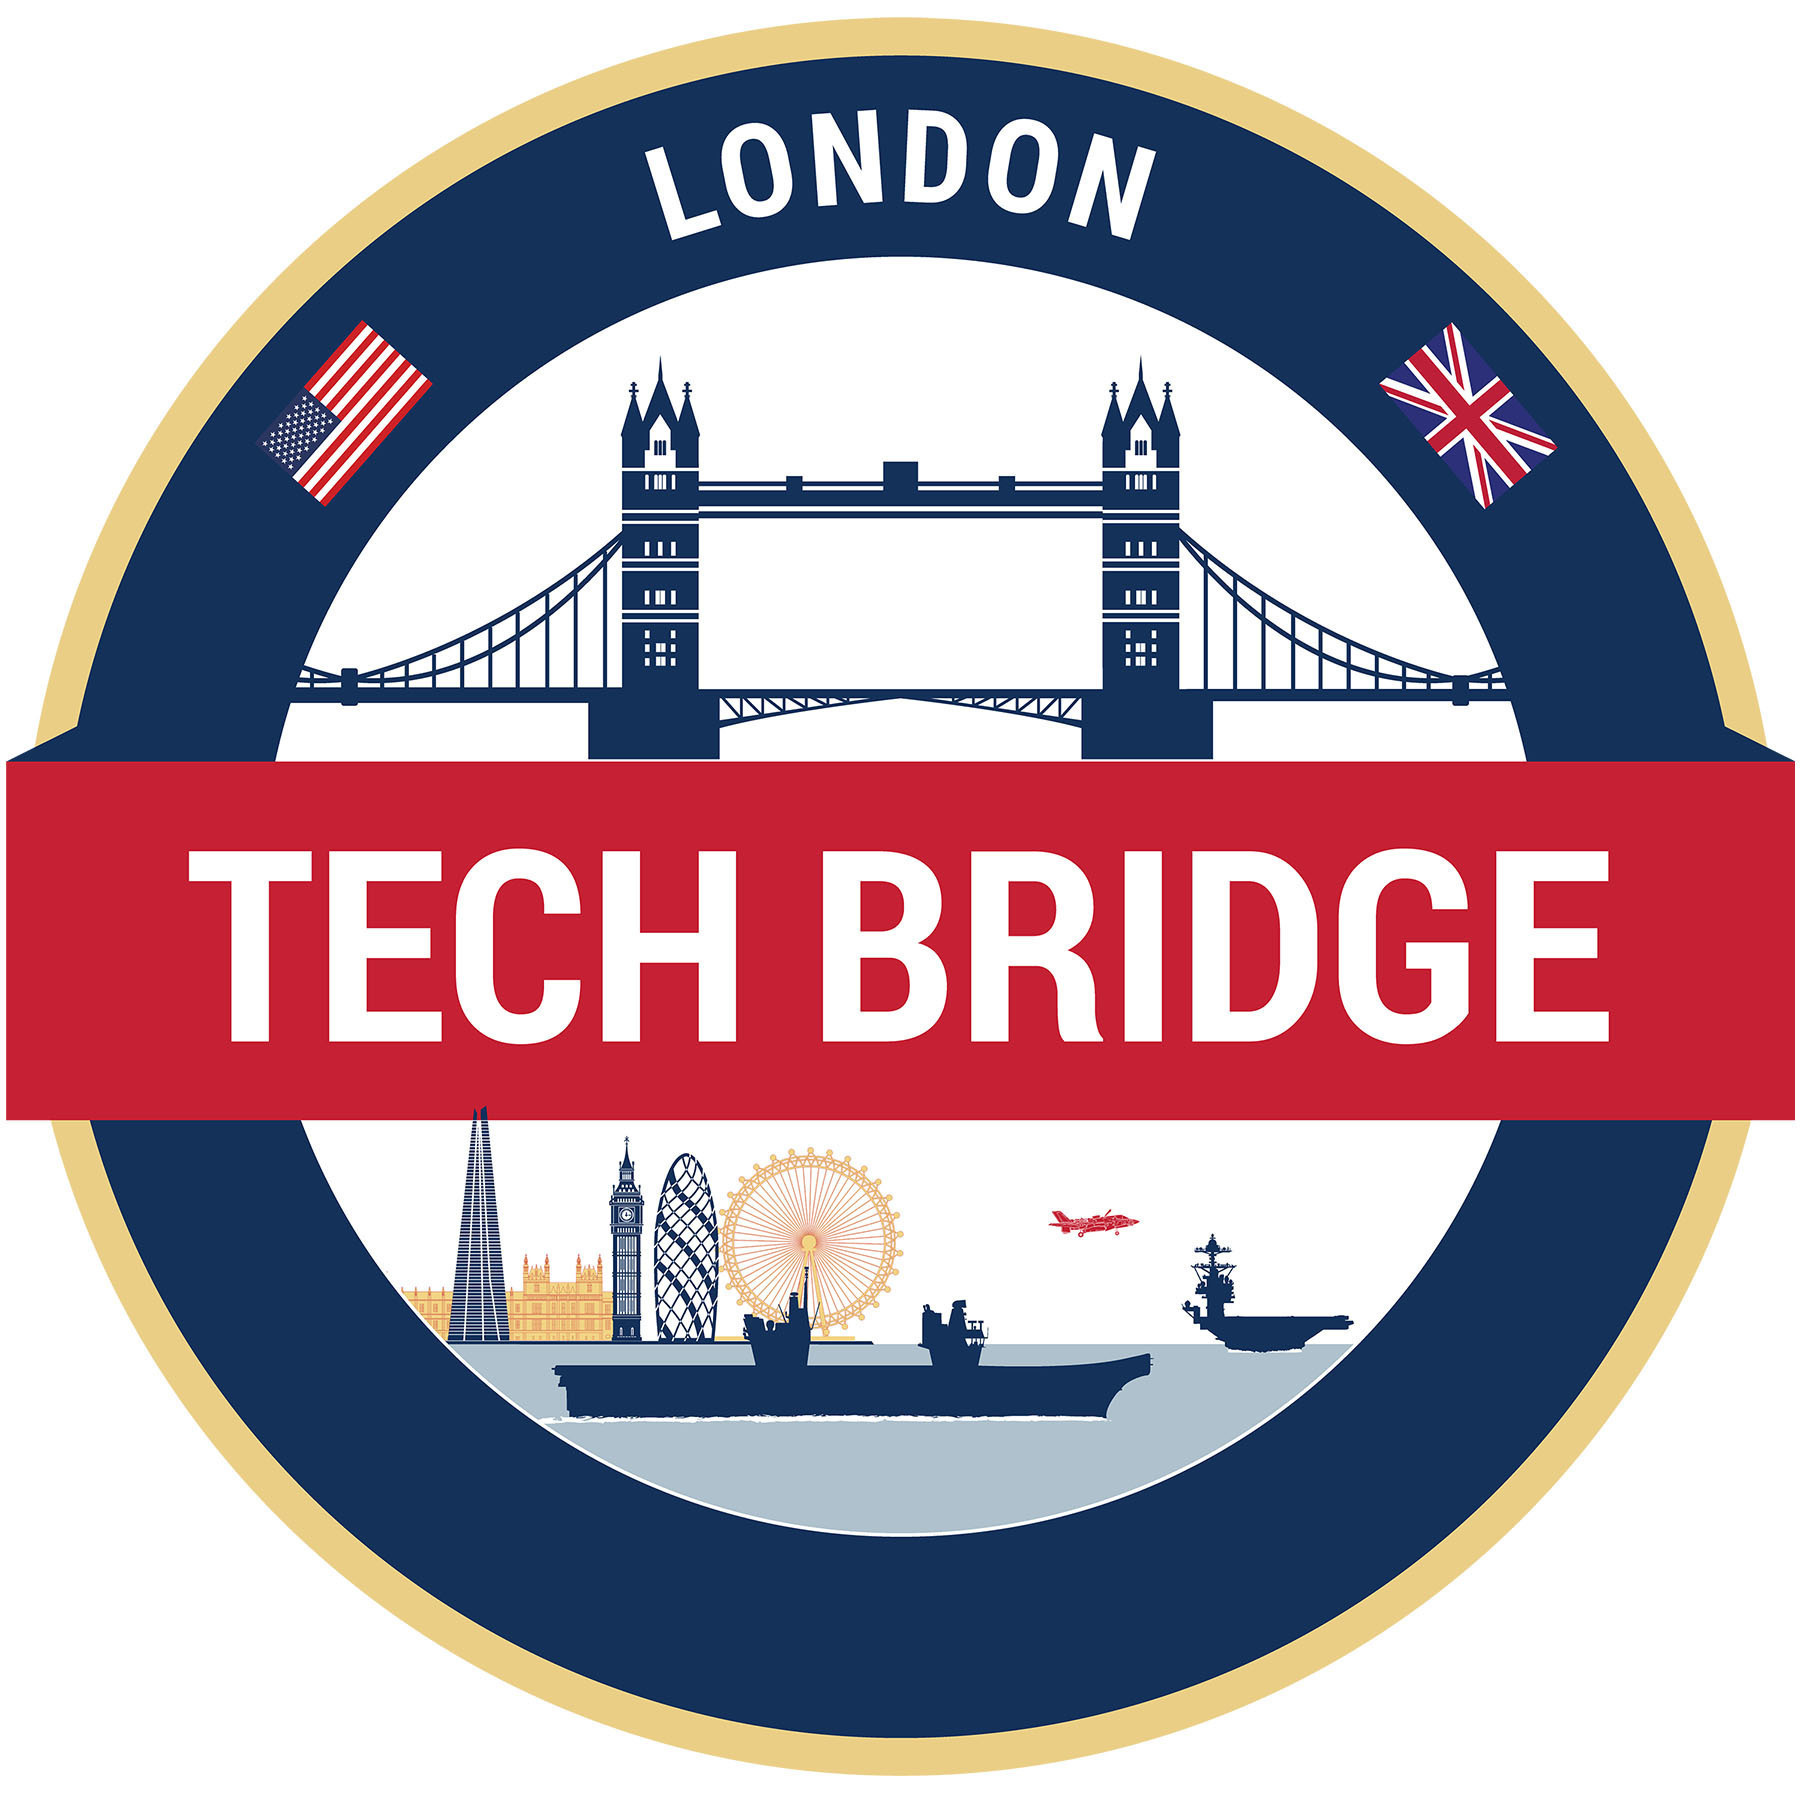 London Tech Bridge mendobrak penghalang dengan ruang kolaborasi baru